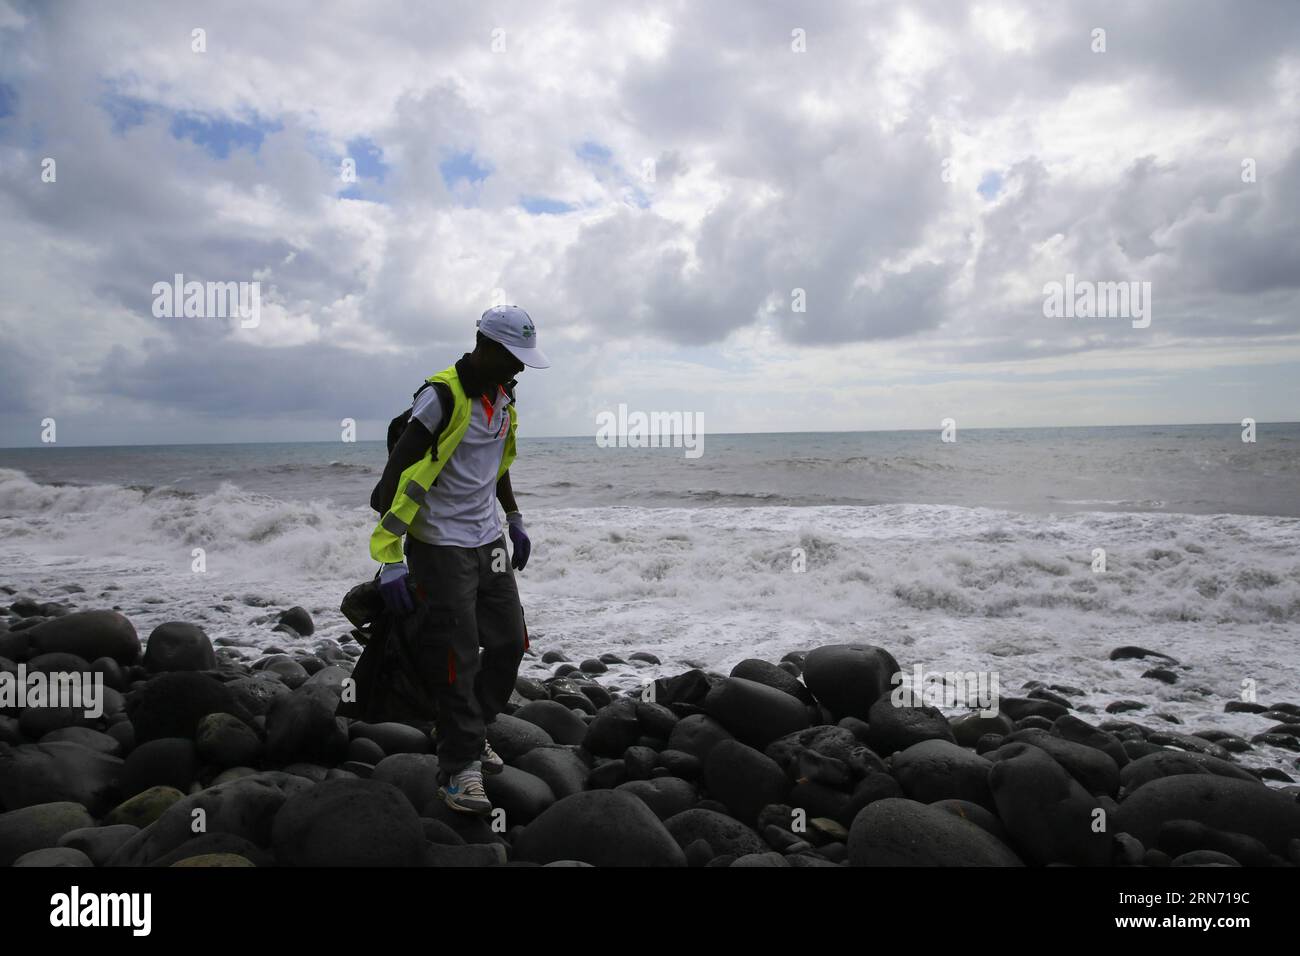 LA RÉUNION, 12 août 2015 -- Un chercheur fouille la plage de Saint André, île de France d outre-mer la Réunion, le 12 août 2015. L'autorité de la Réunion a déclaré lundi qu'aucun indice lié au vol manquant MH370 n'a été trouvé ici depuis le lancement d'une recherche tridimensionnelle vendredi dernier. LA REUNION-MH370 DEBRIS-SEARCH-CONTINUE PanxSiwei PUBLICATIONxNOTxINxCHN la Reunion août 12 2015 un chercheur recherche la plage de Saint André France S Oversea Islande la Reunion LE 12 2015 août la Réunion Autorité lundi dit Thatcher aucun indice LIÉ au vol manquant MH370 n'a été trouvé ici depuis le Laun Banque D'Images